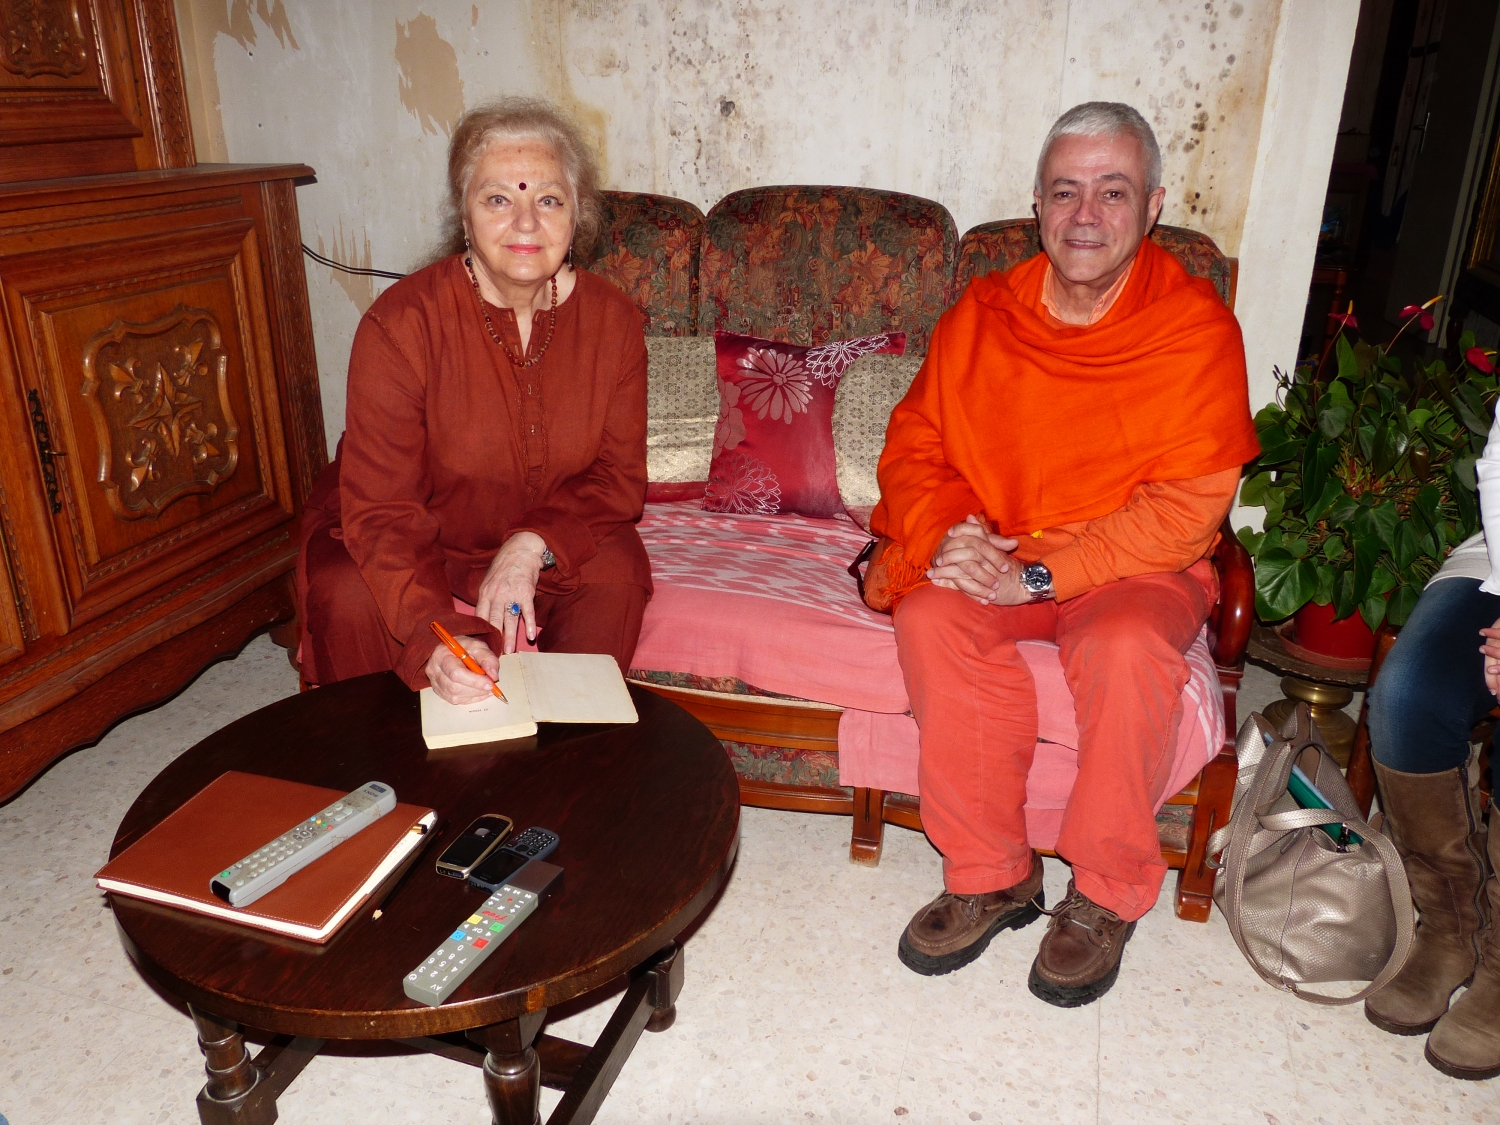 Encontro de H.H. Jagat Guru Amrta Sūryānanda Mahā Rāja com Tara Michaël - Arles, Provença - 2013, Maio